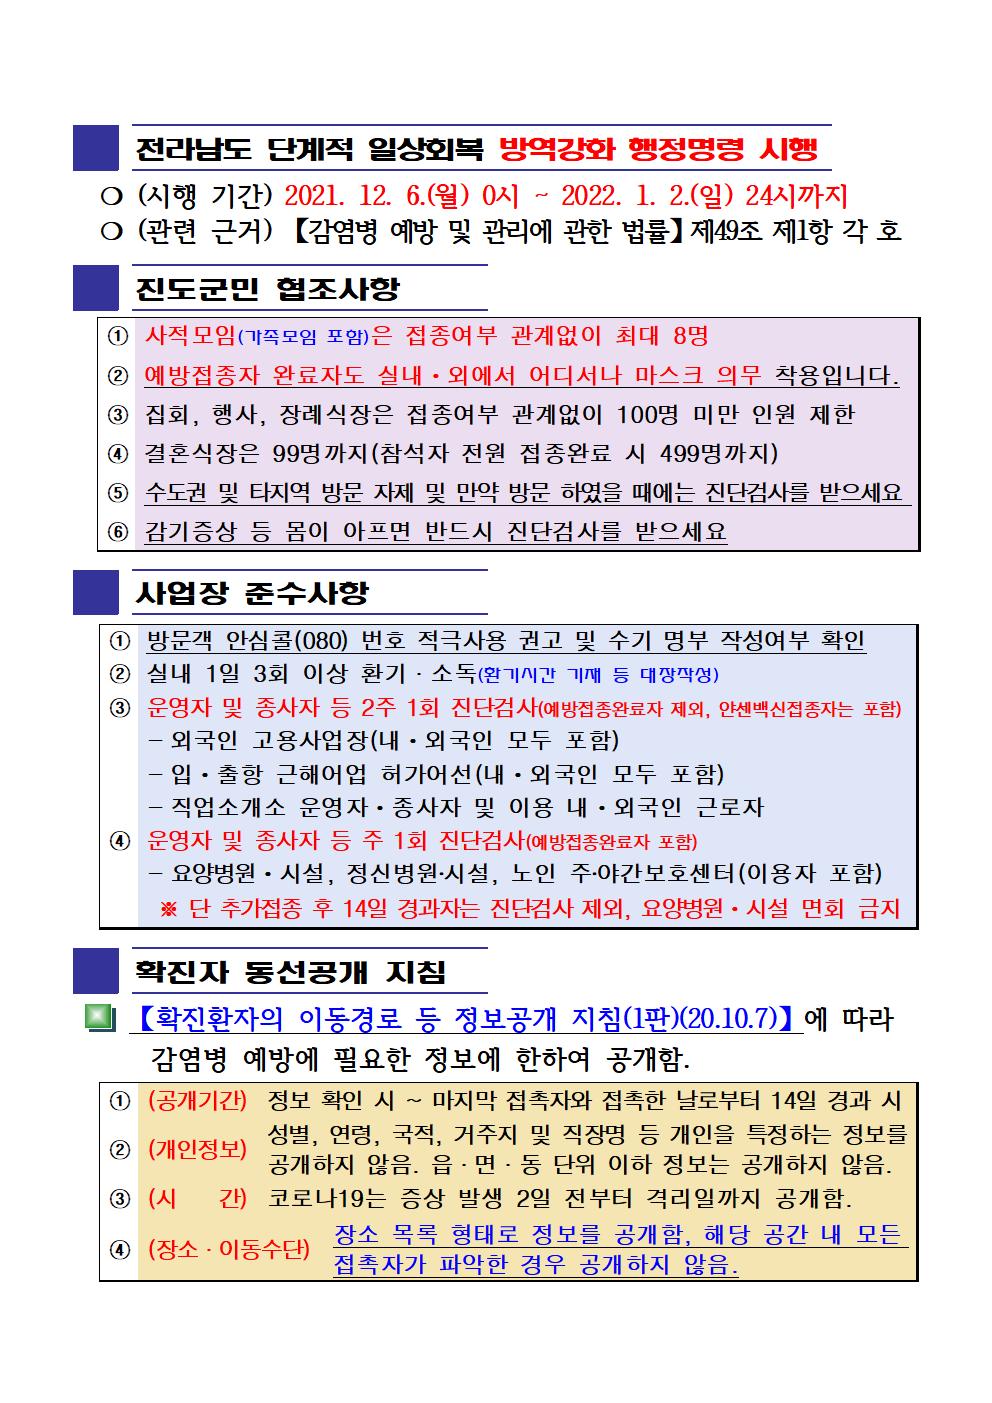 2021년 코로나 19 대응 일일상황보고(12월 16일 24시 기준) 첨부#2